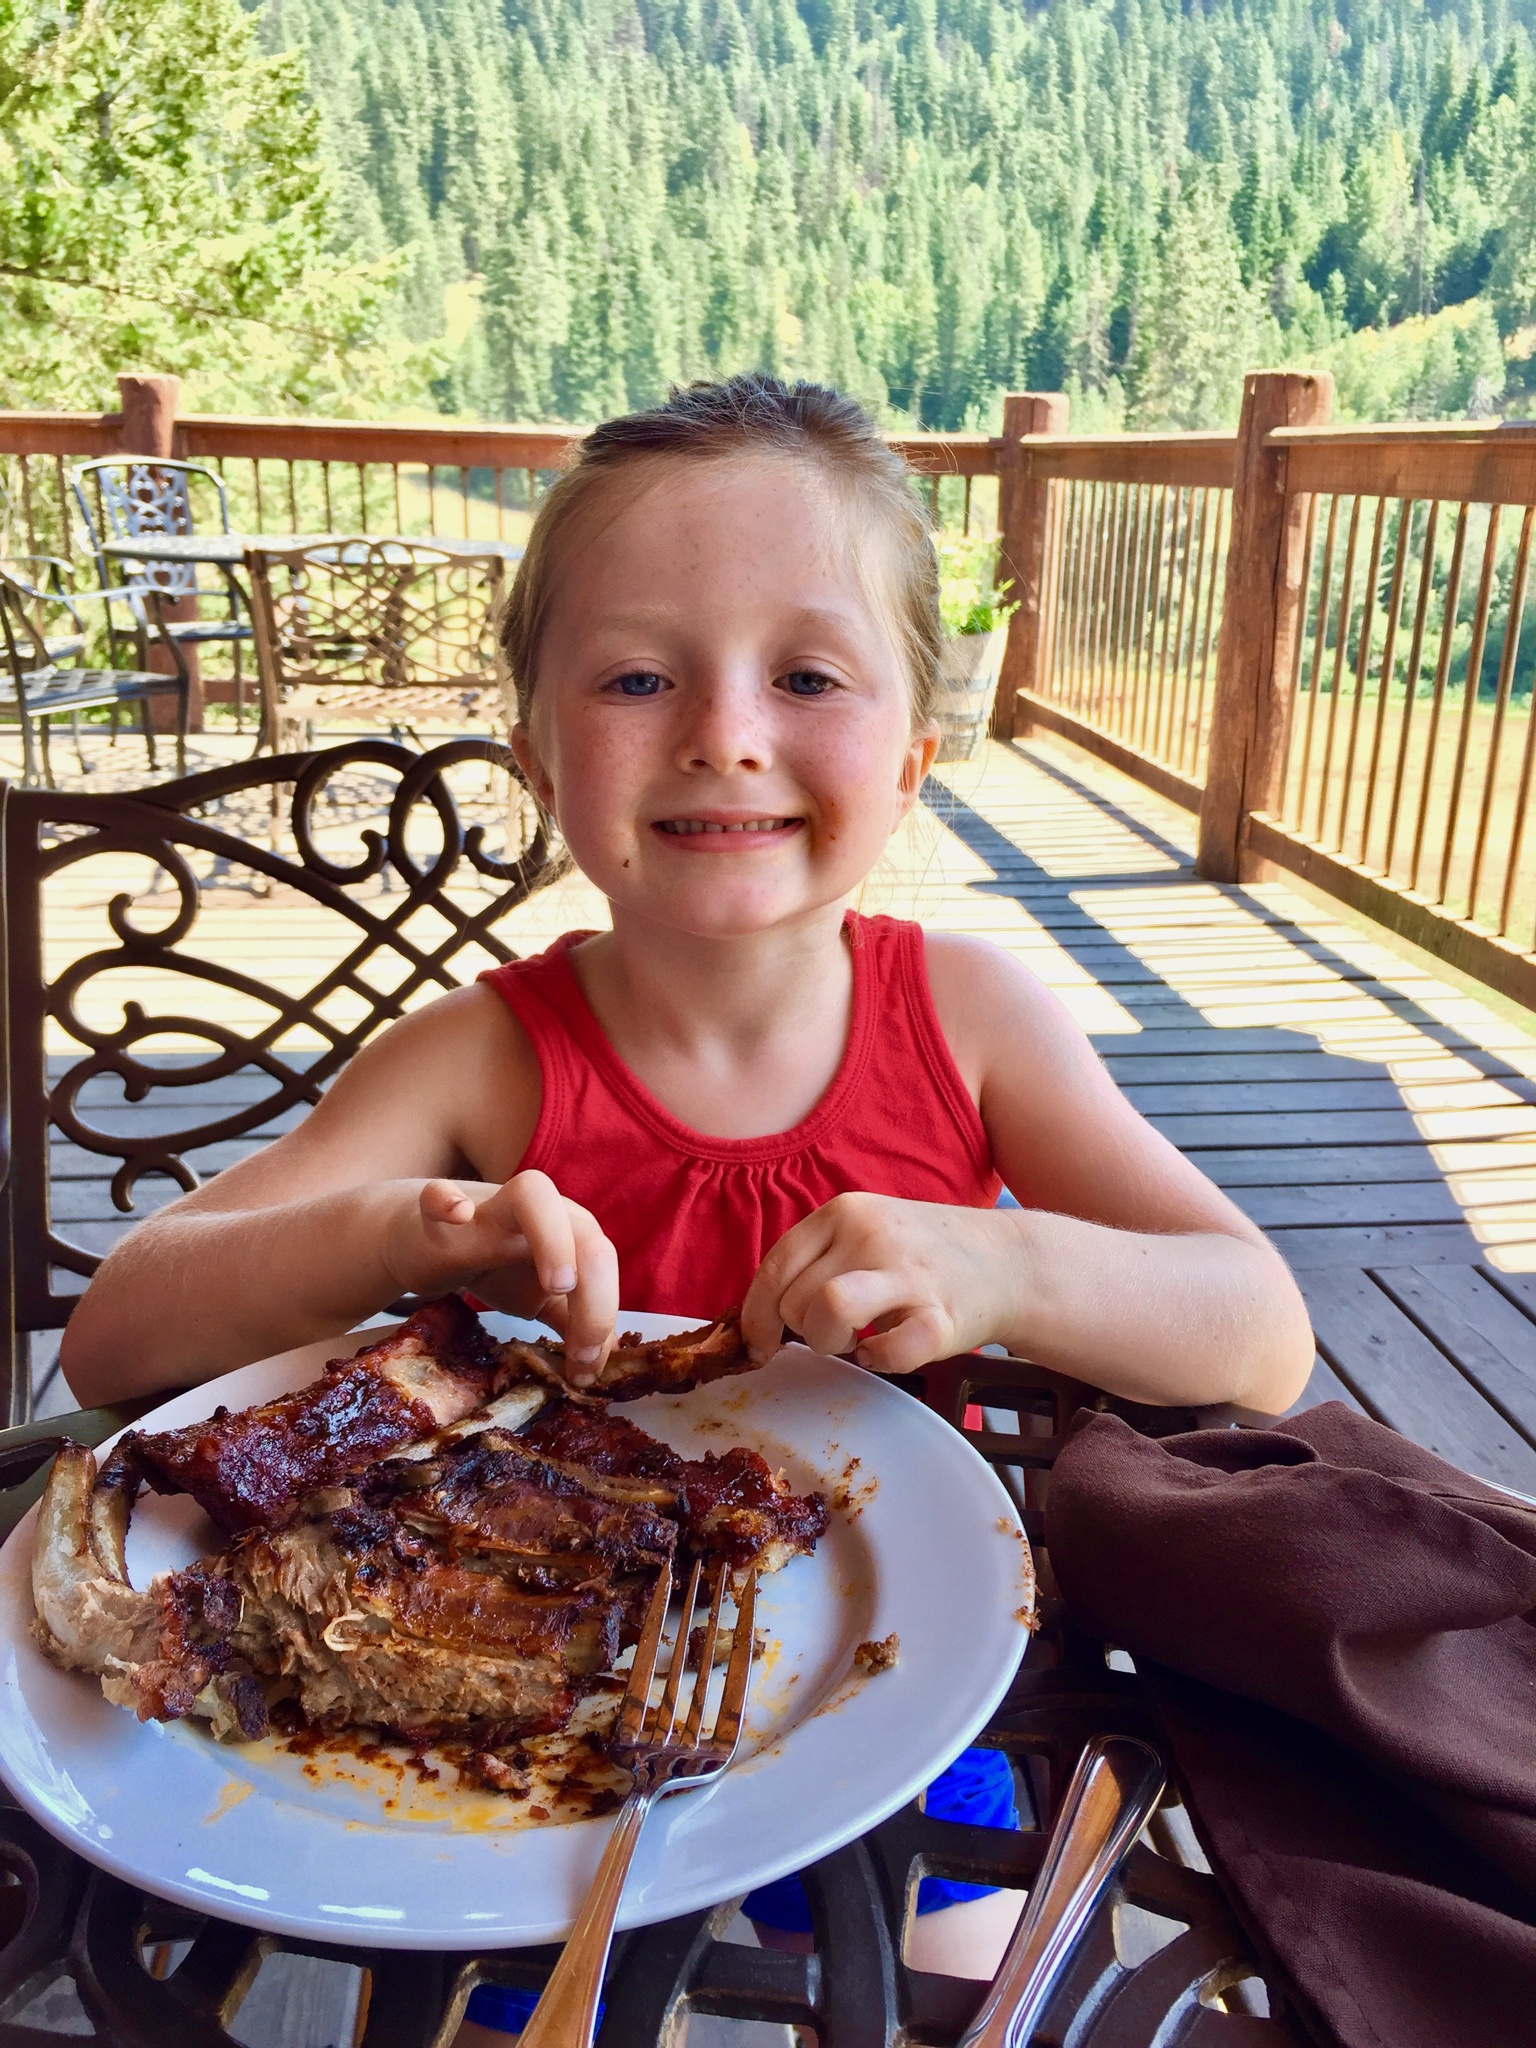 Young girl eating ribs.